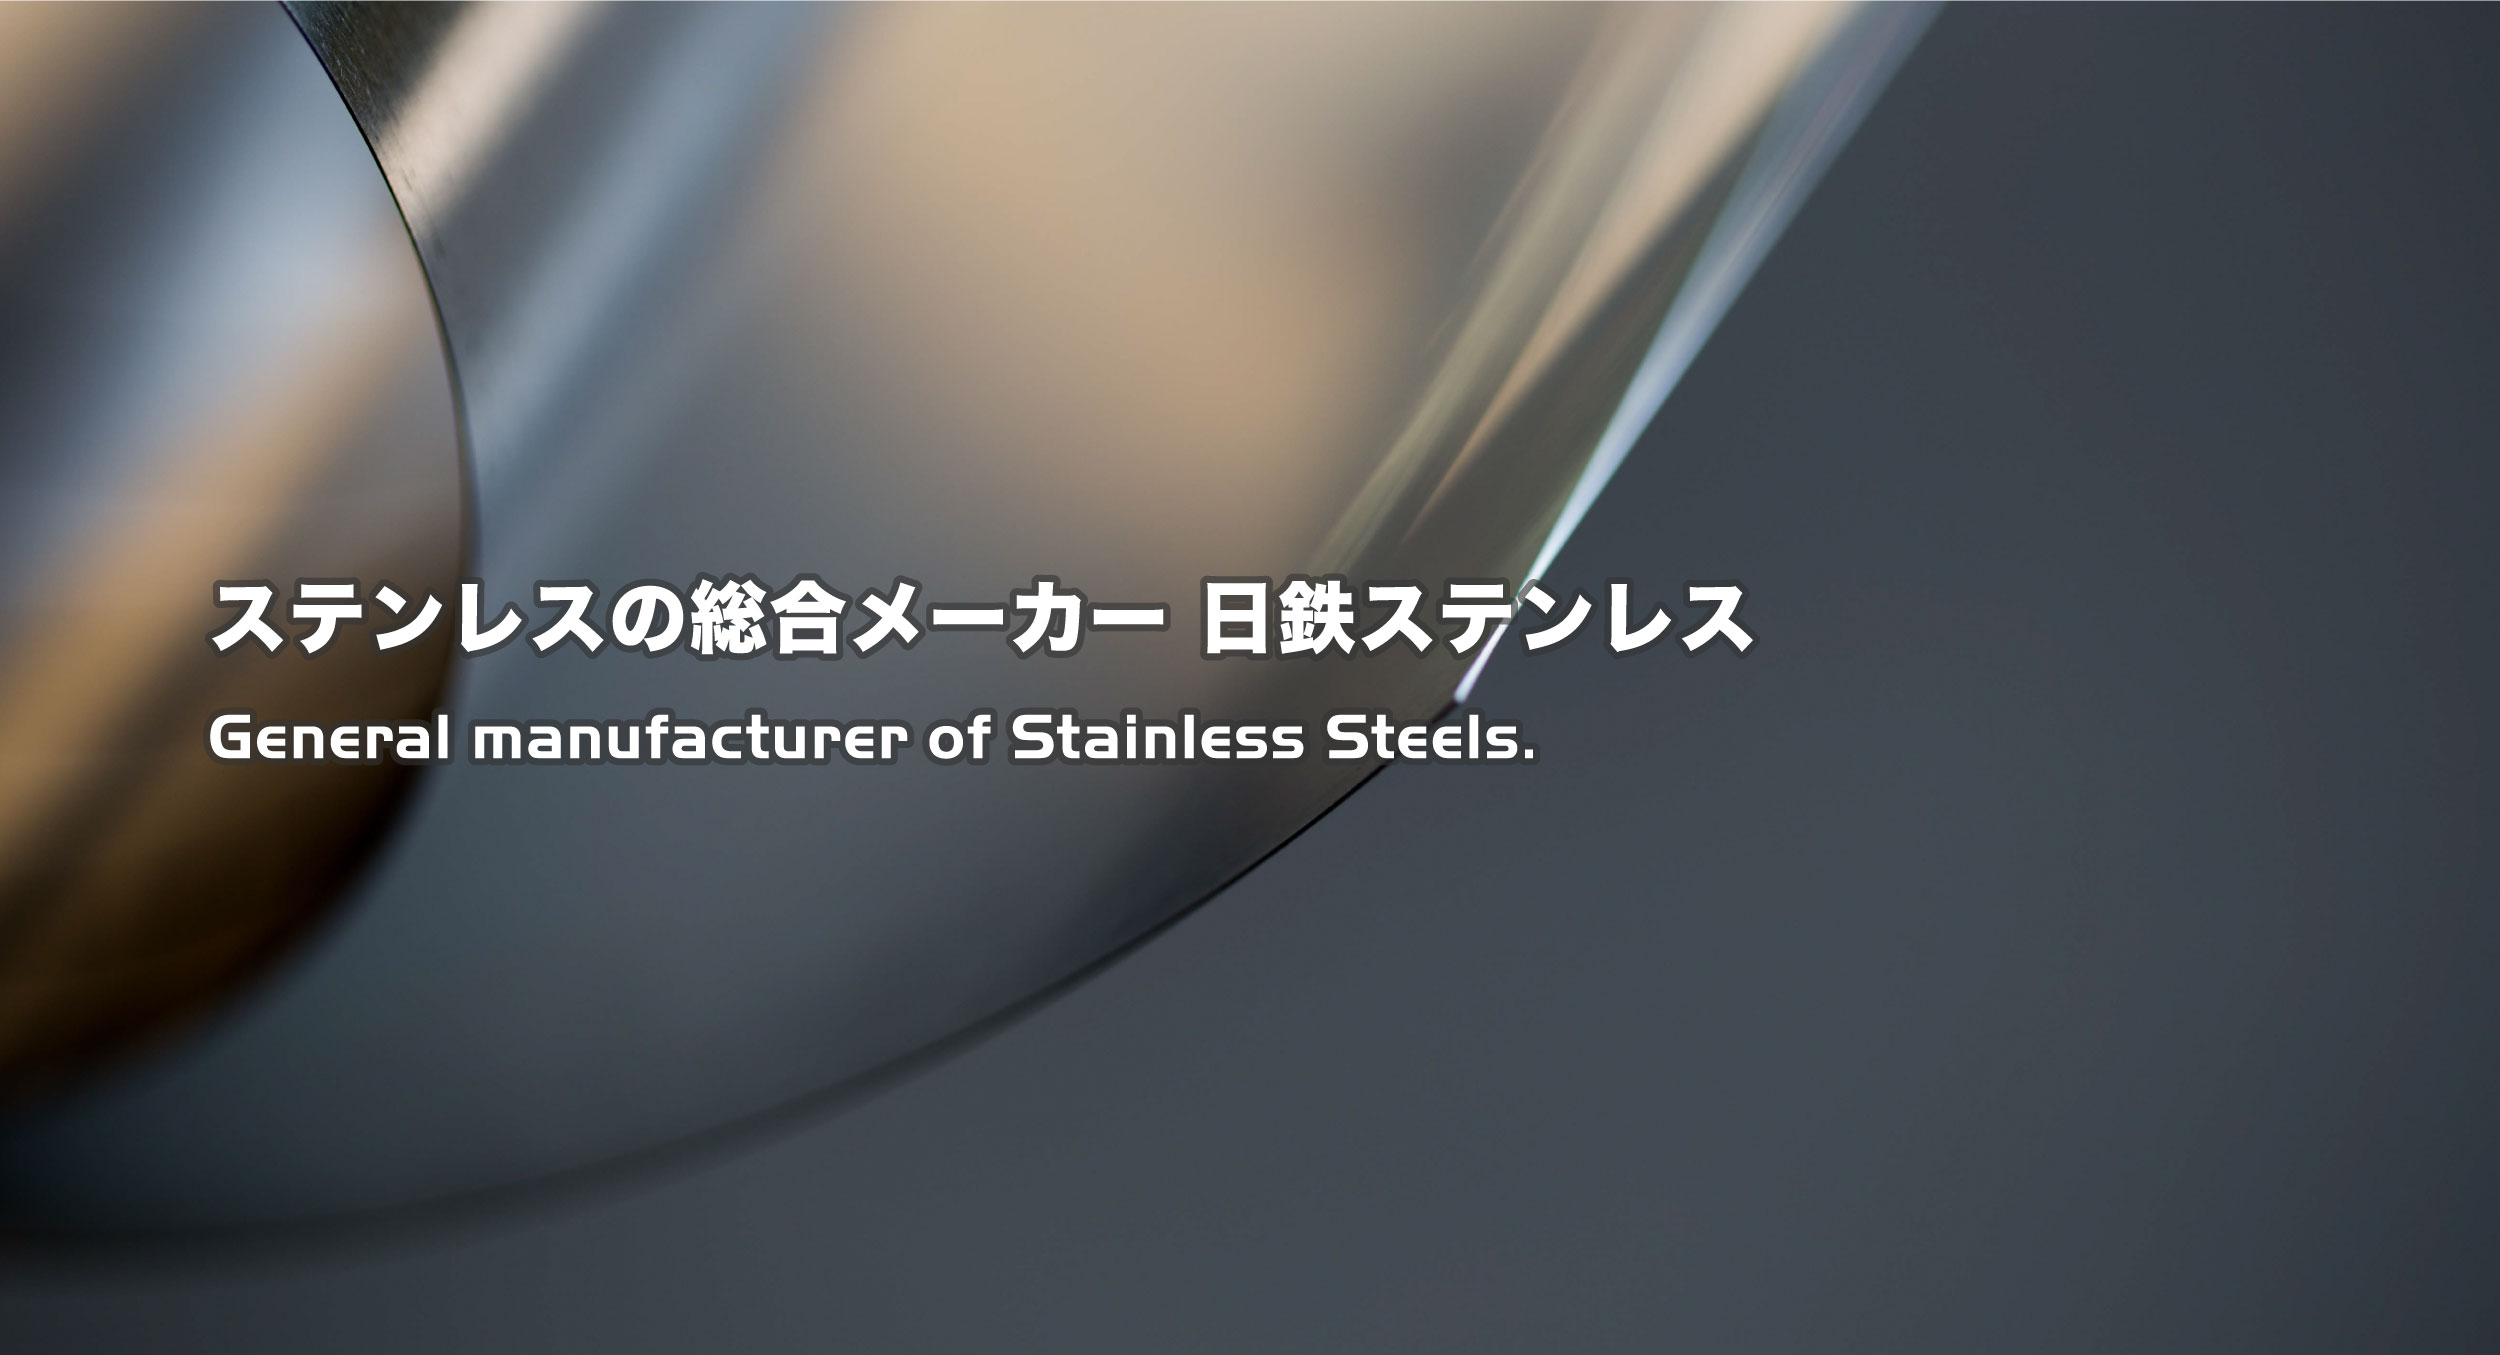 ステンレスの総合メーカー 日鉄ステンレス General manufacturer of Stainless Steels.
